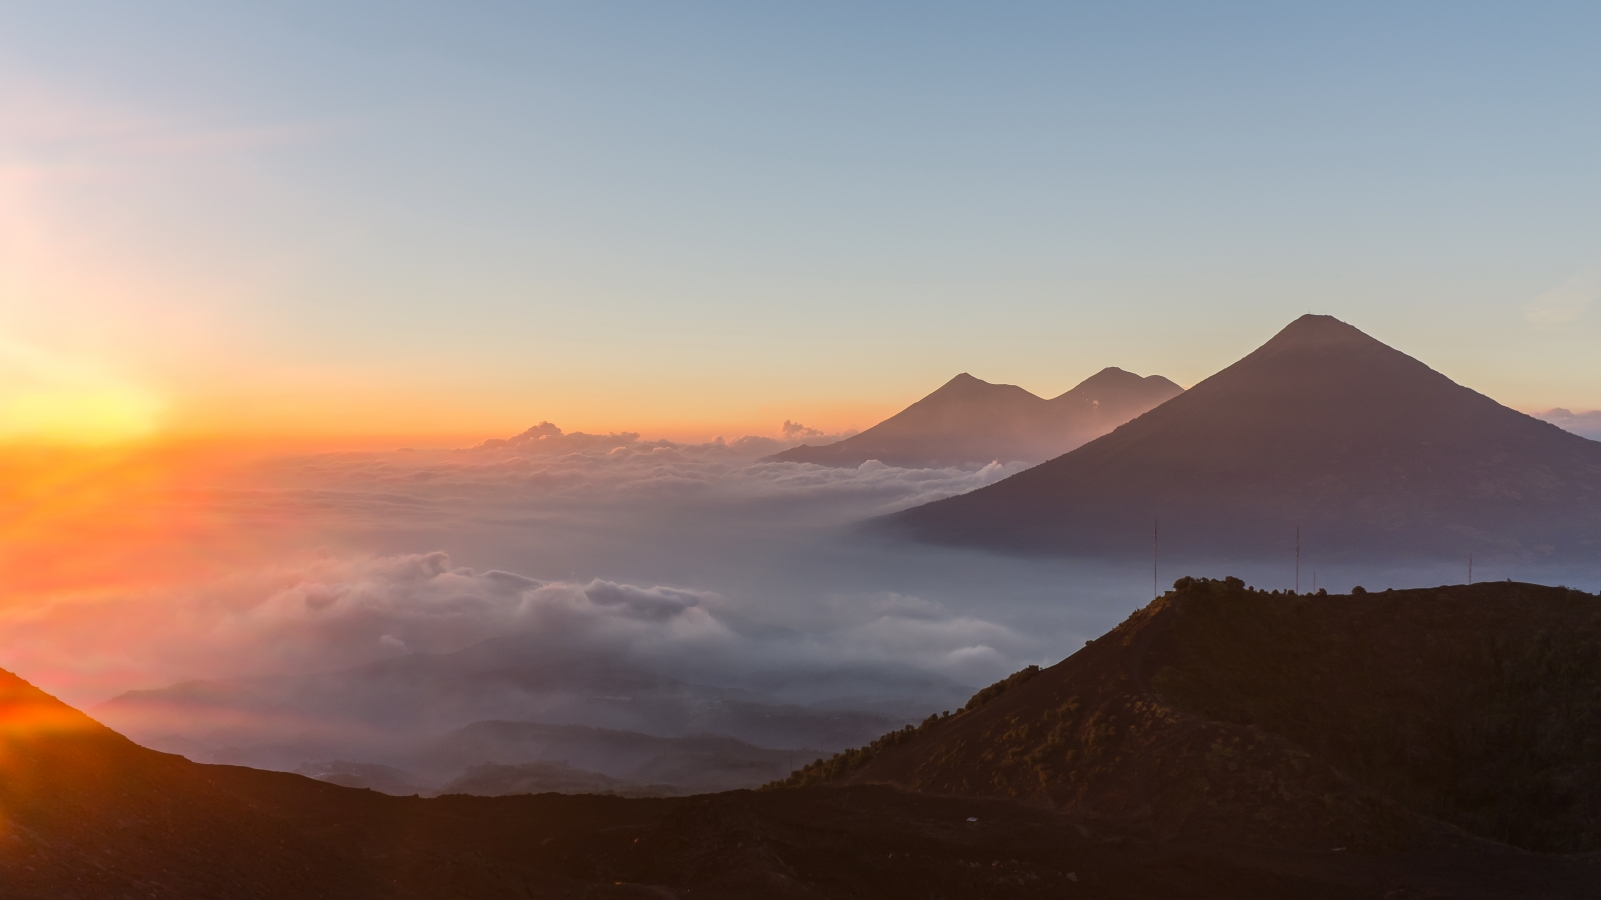 Volcan Pacaya : View from Volcano Pacaya - © Flickr user Christopher Crouzet